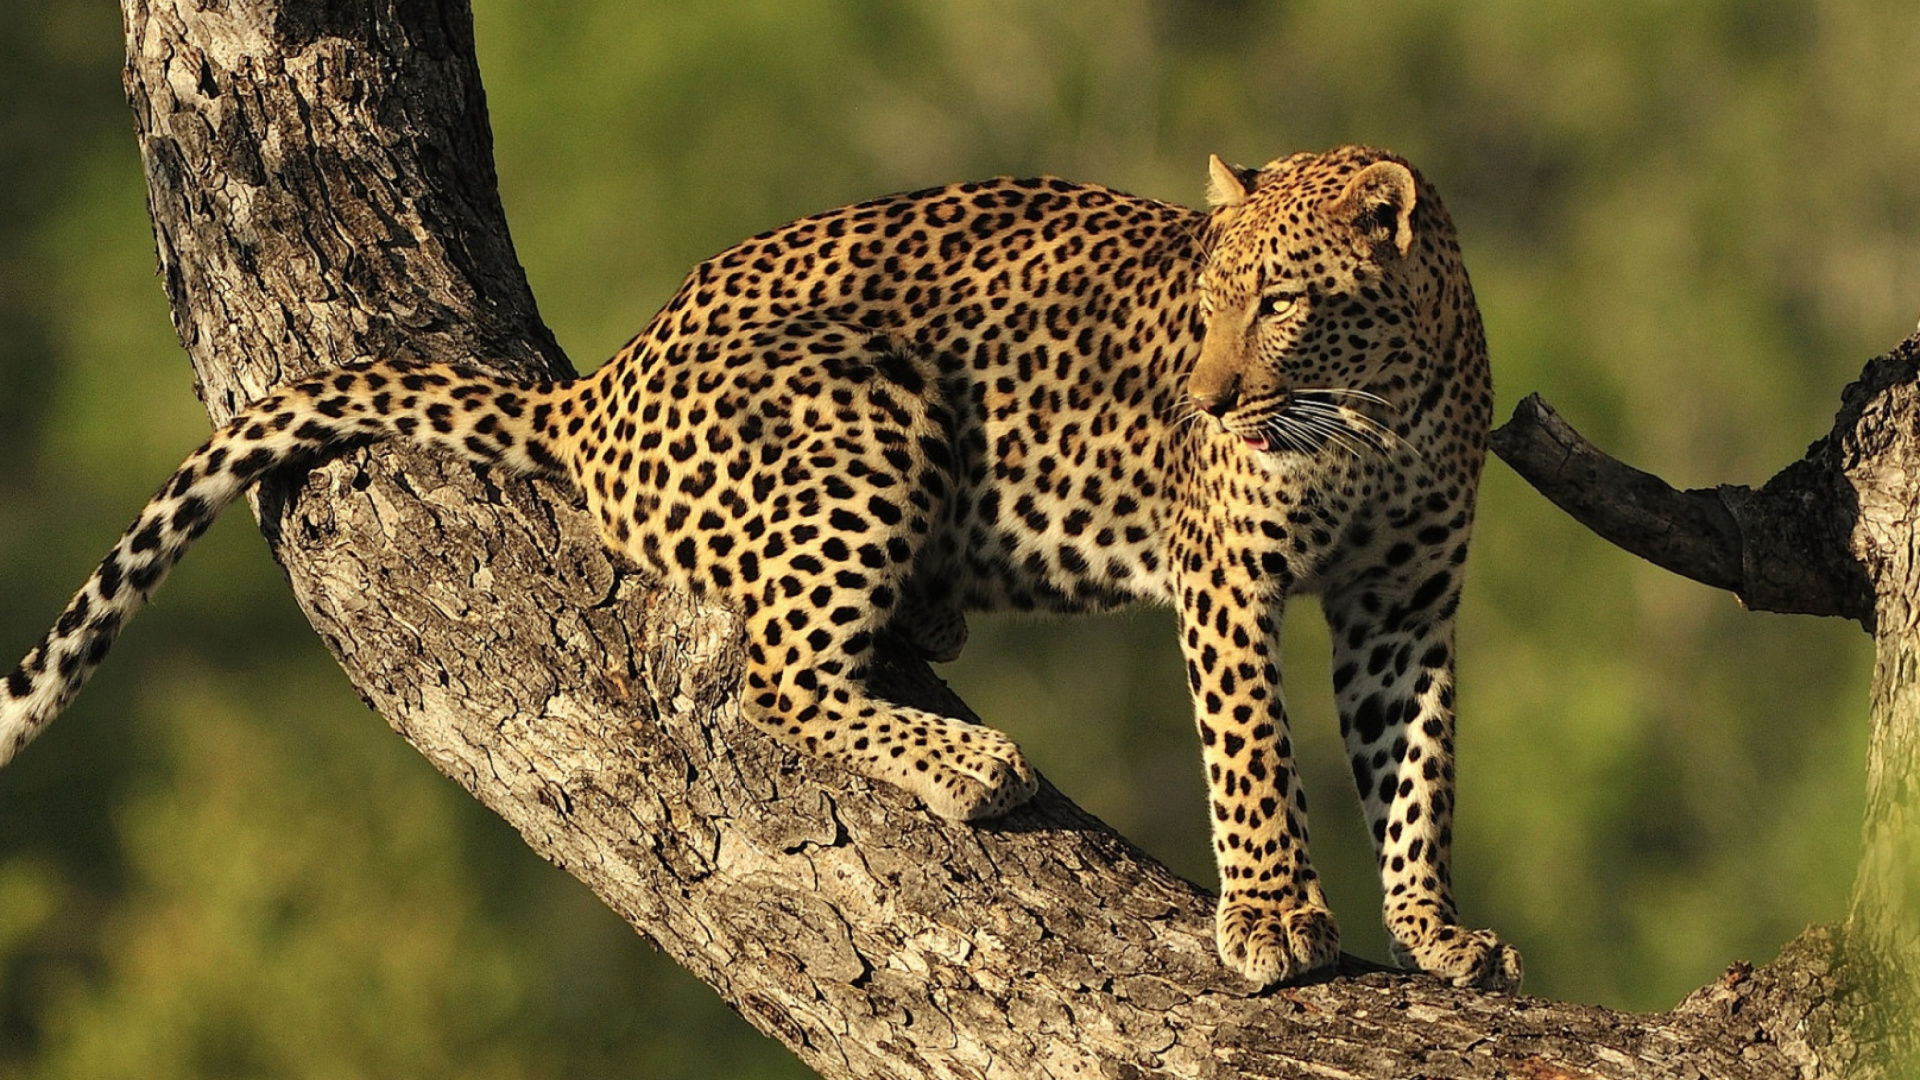 Kruger National Park with Leopard screenshot #1 1920x1080